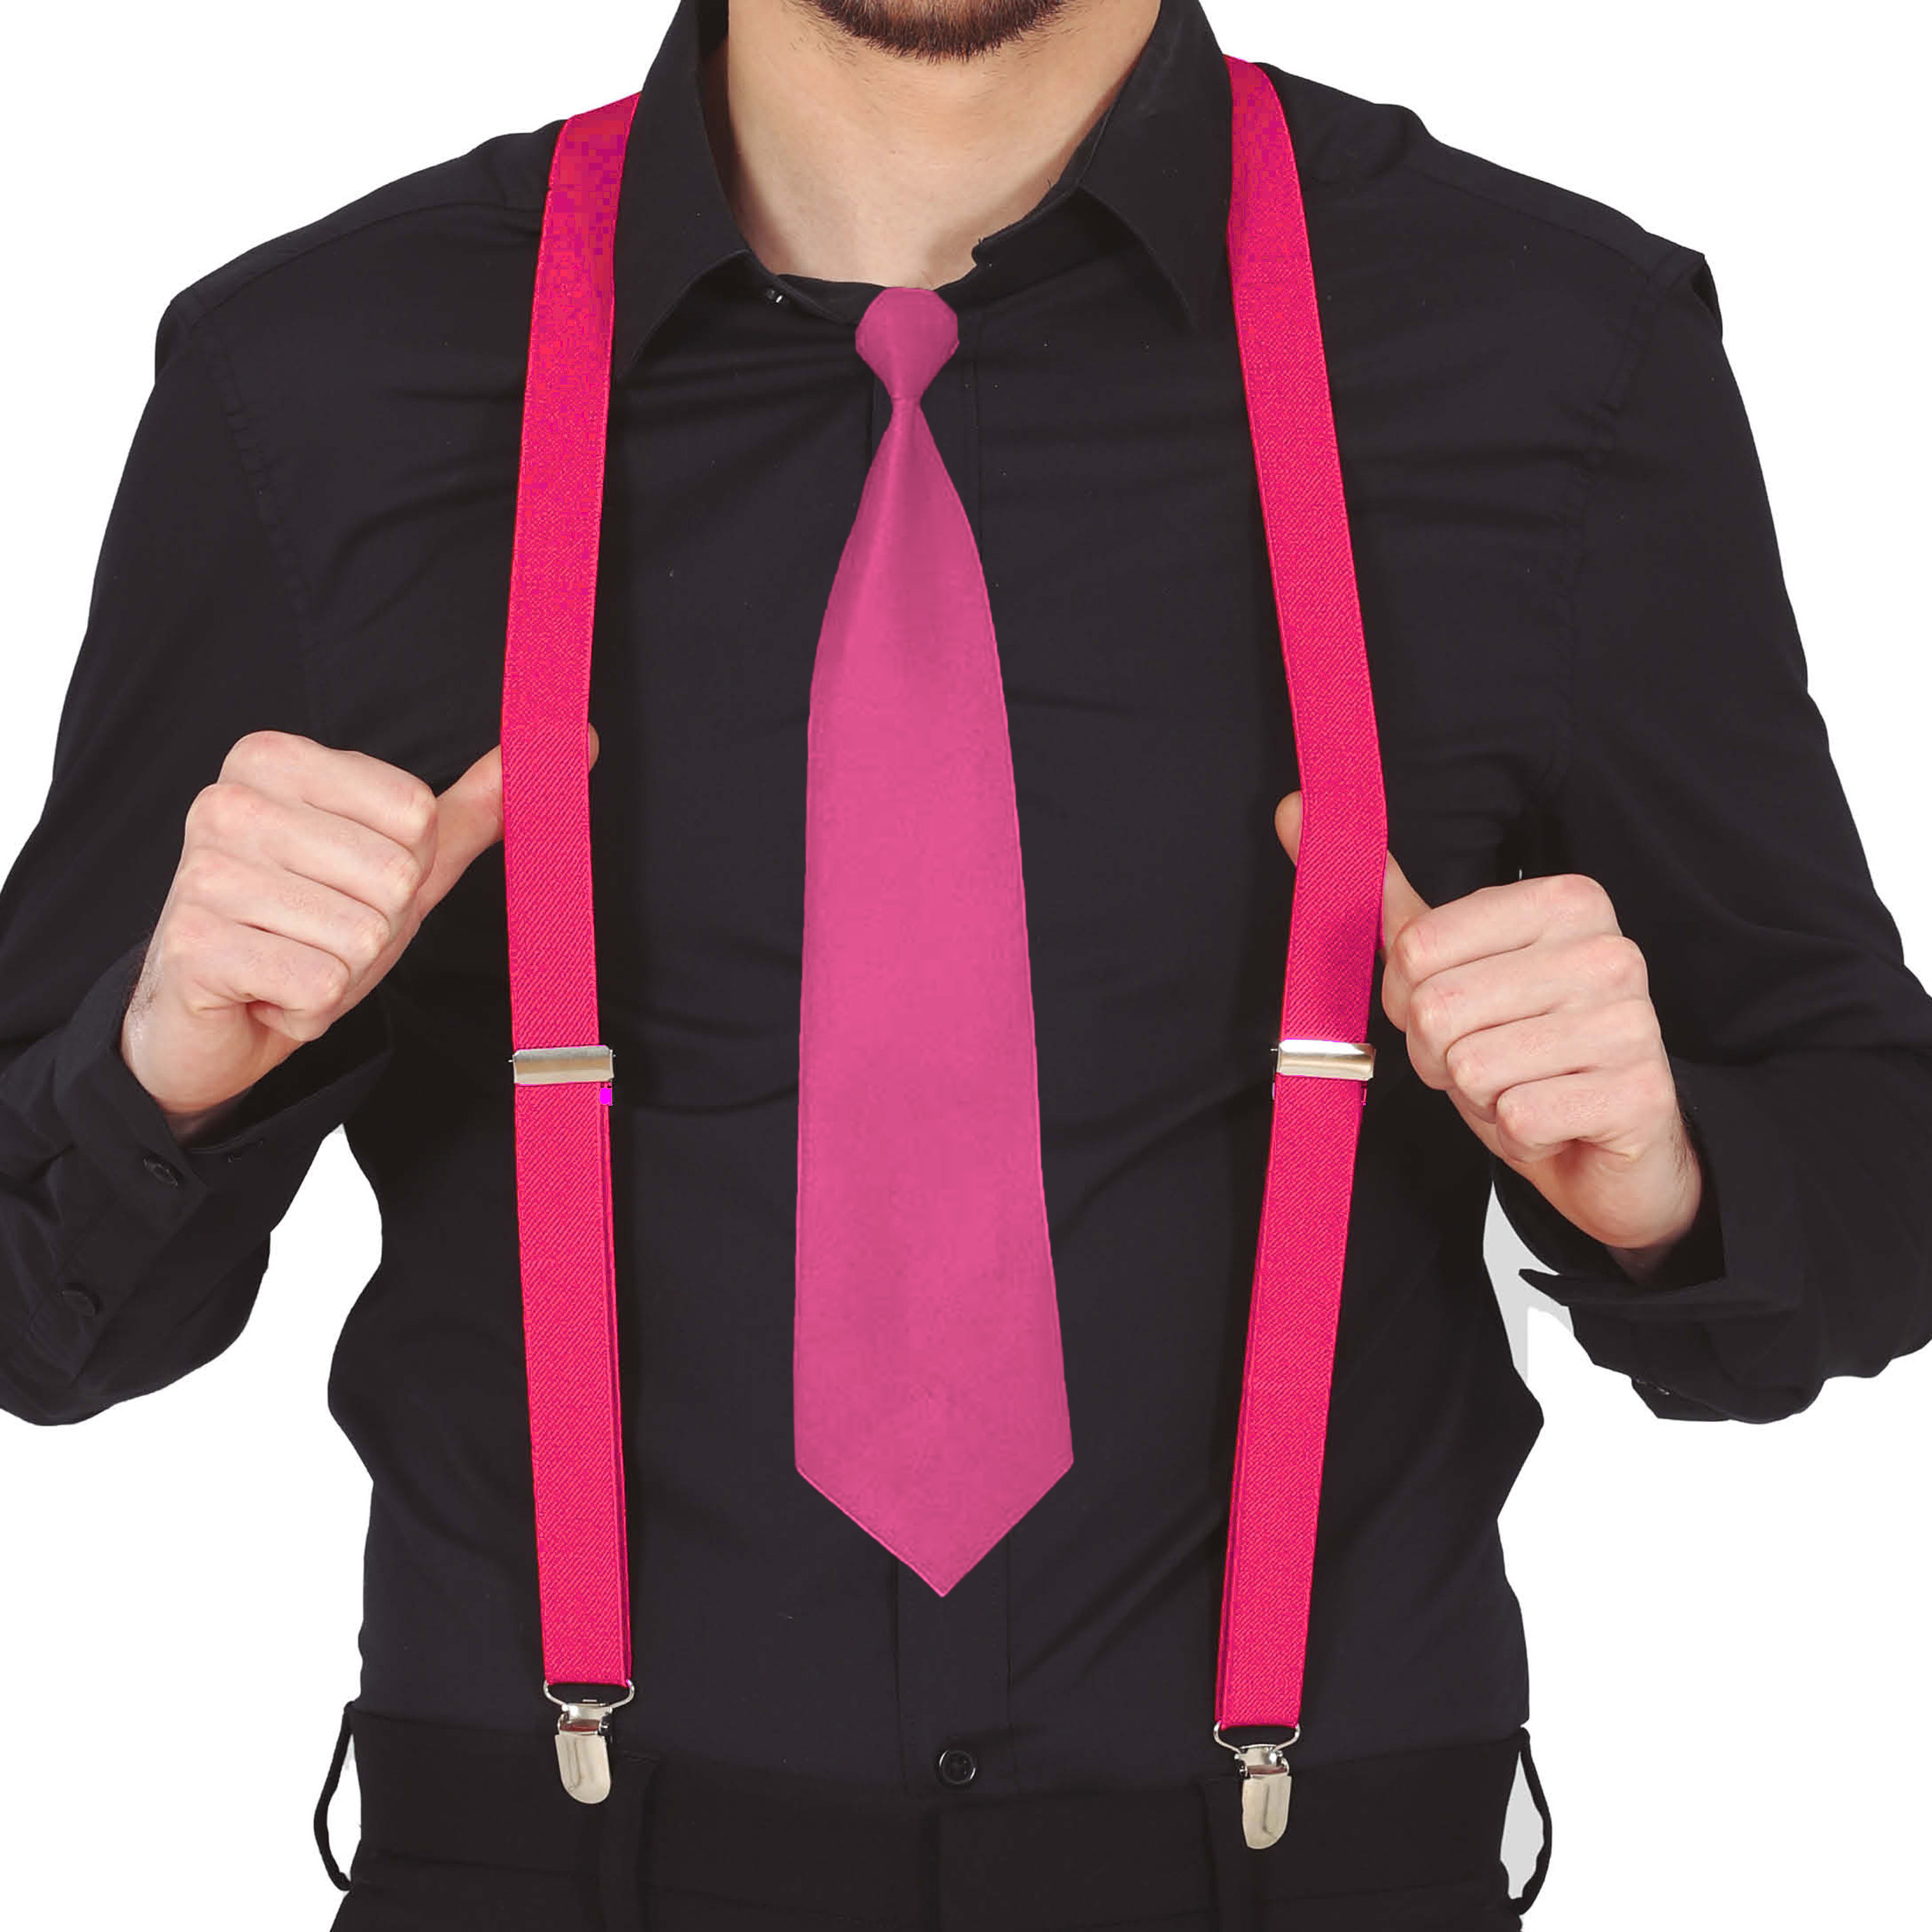 Carnaval verkleed bretels en stropdas - fuchsia roze - volwassenen - verkleed accessoires -